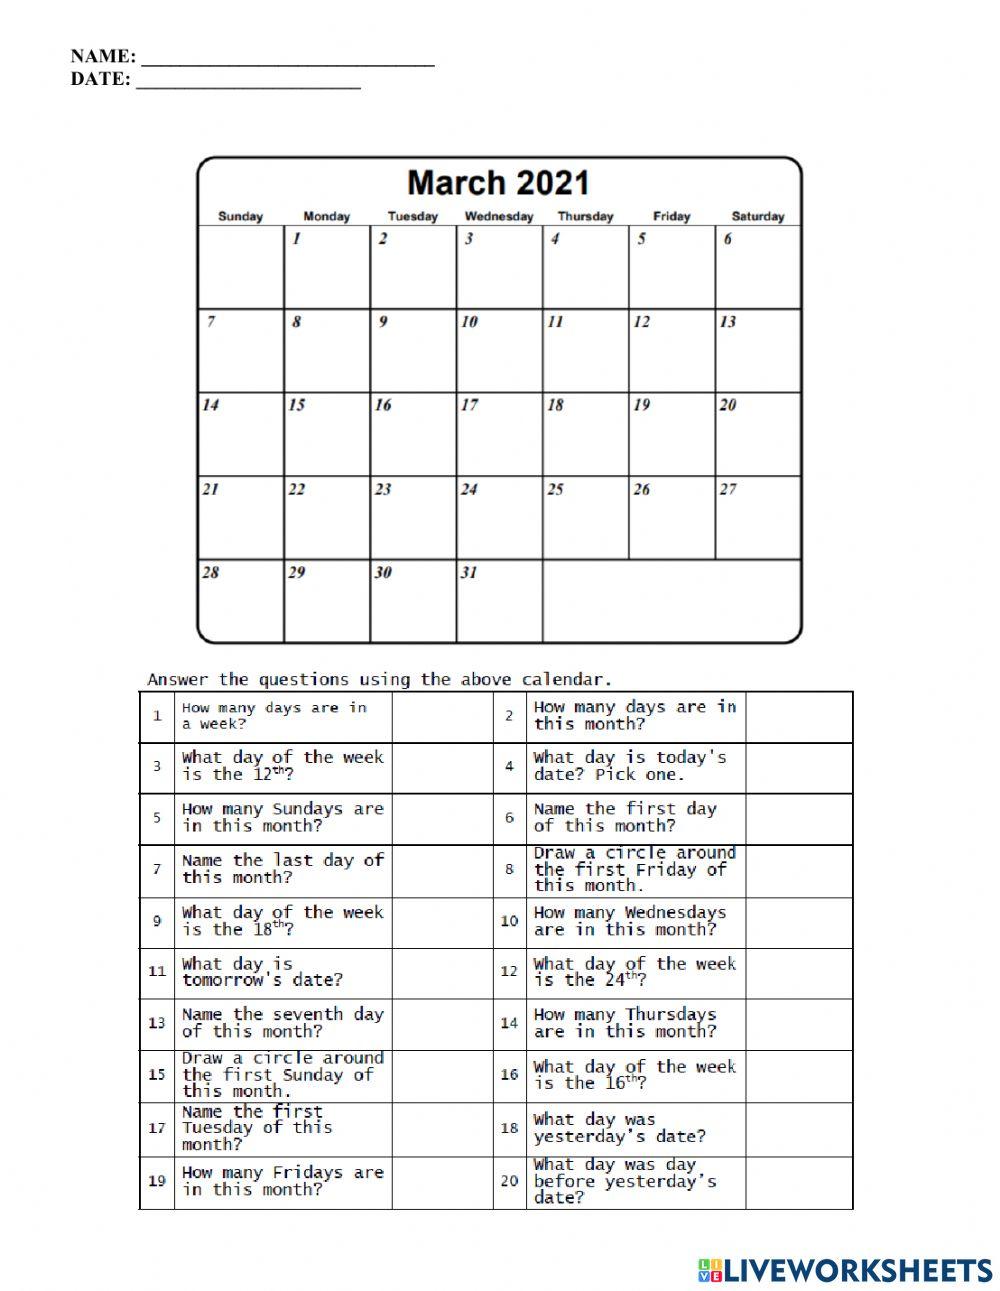 Calendar math - march 2021